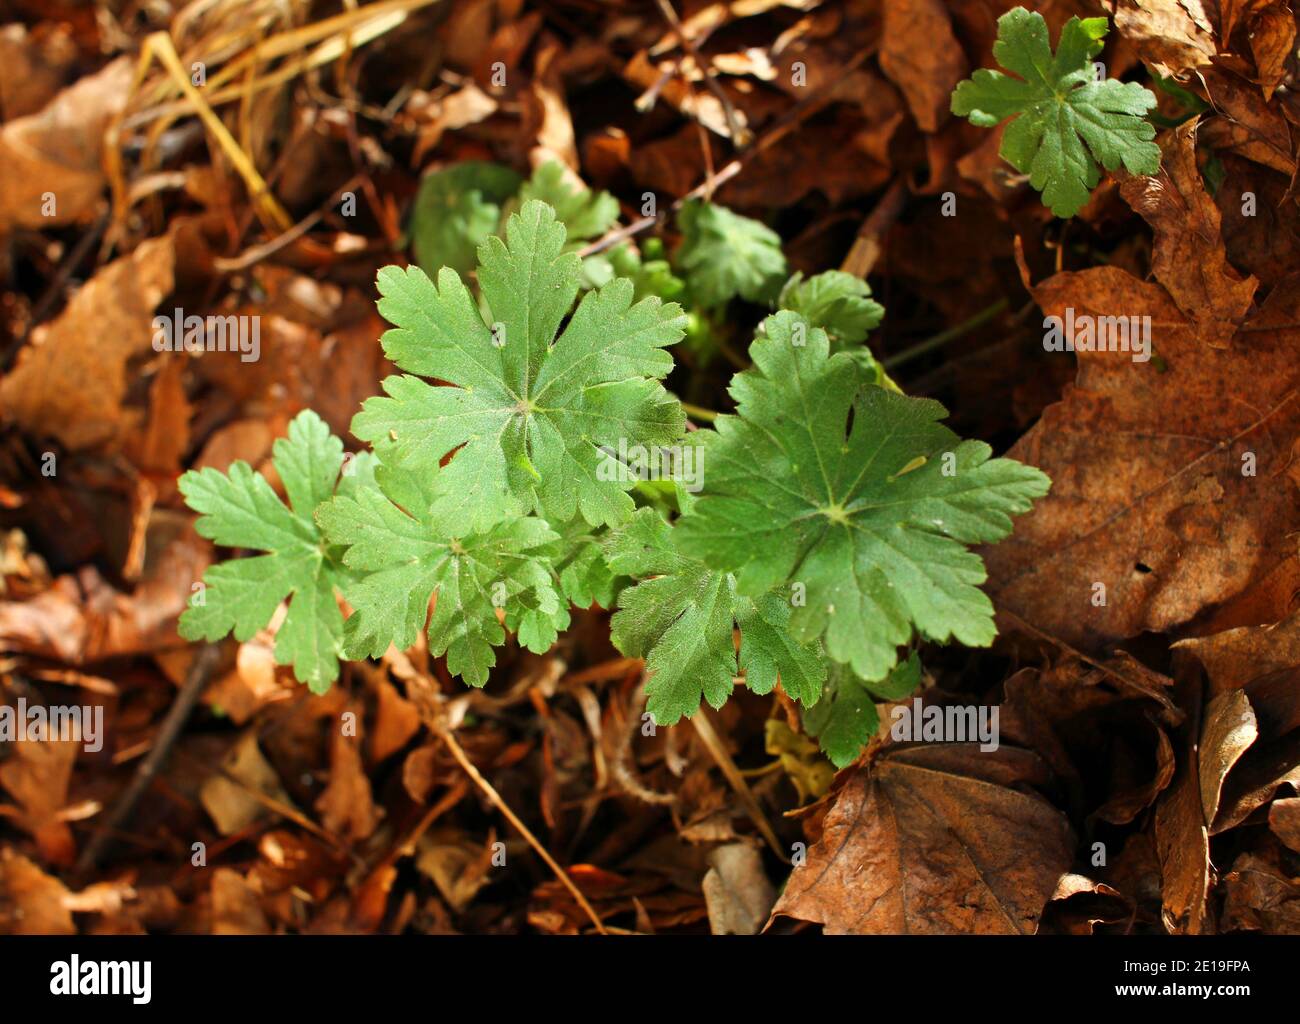 Geranium macrorrhizum or common geranium in nature. Green geranium leaves texture Stock Photo